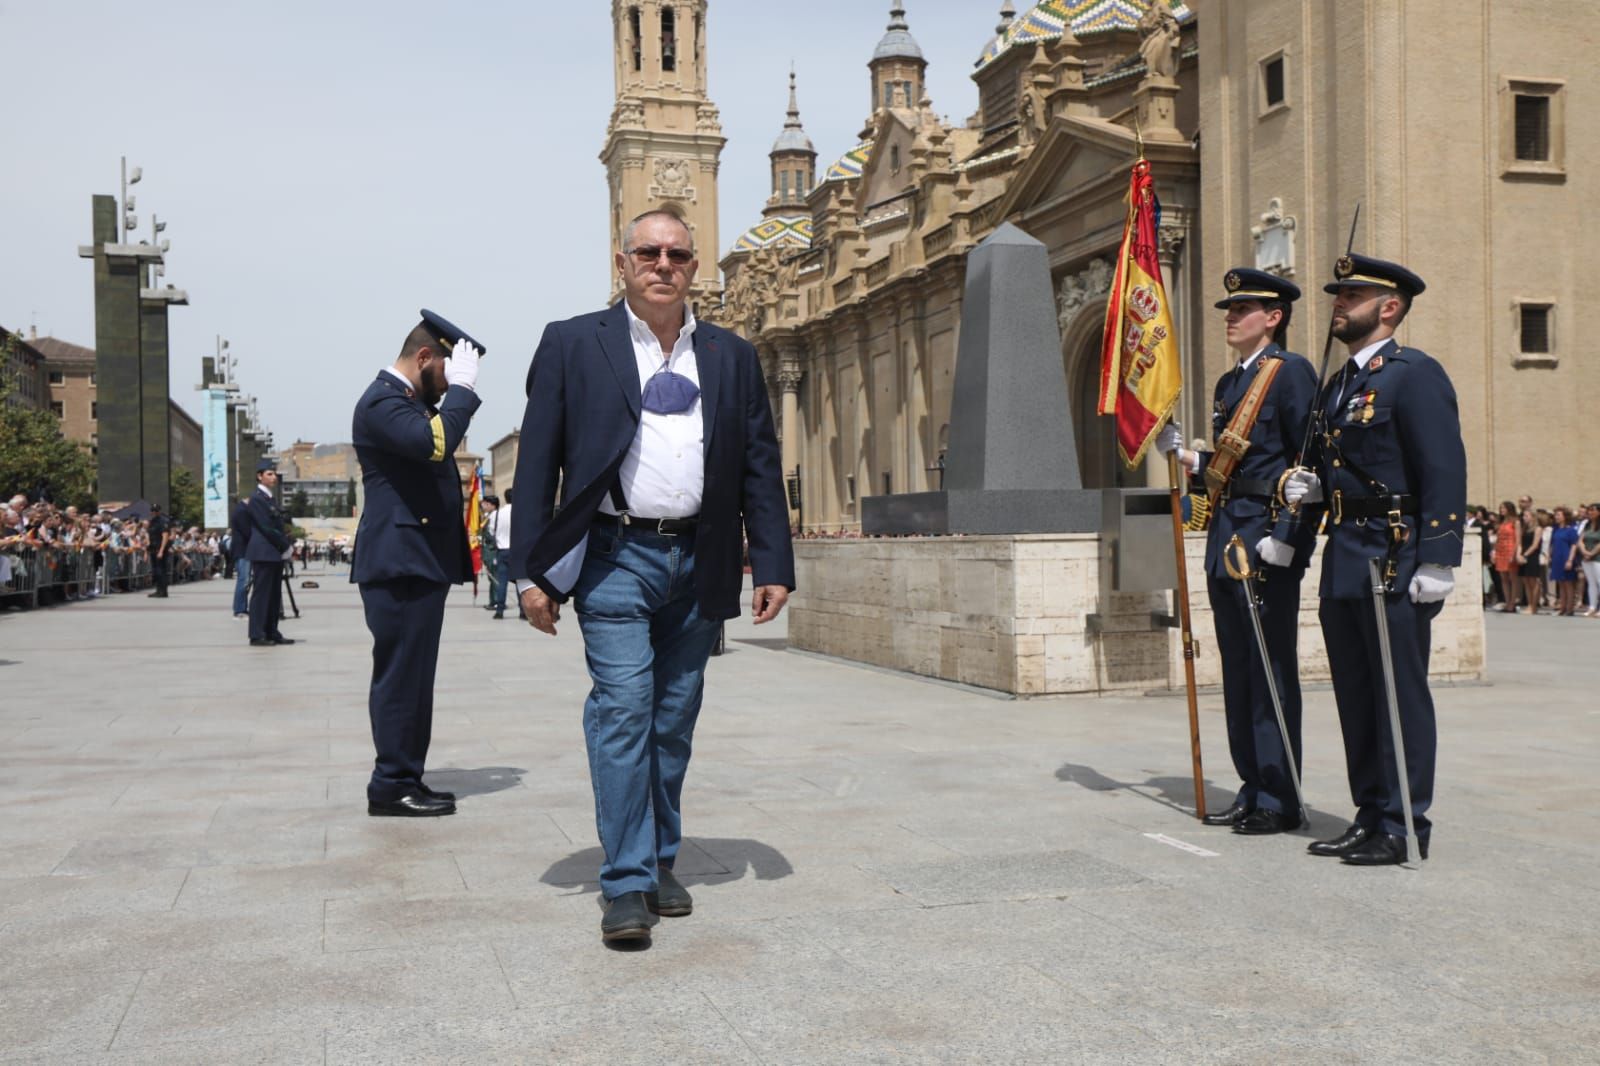 Jura de bandera civil en Zaragoza | Búscate en nuestra galería